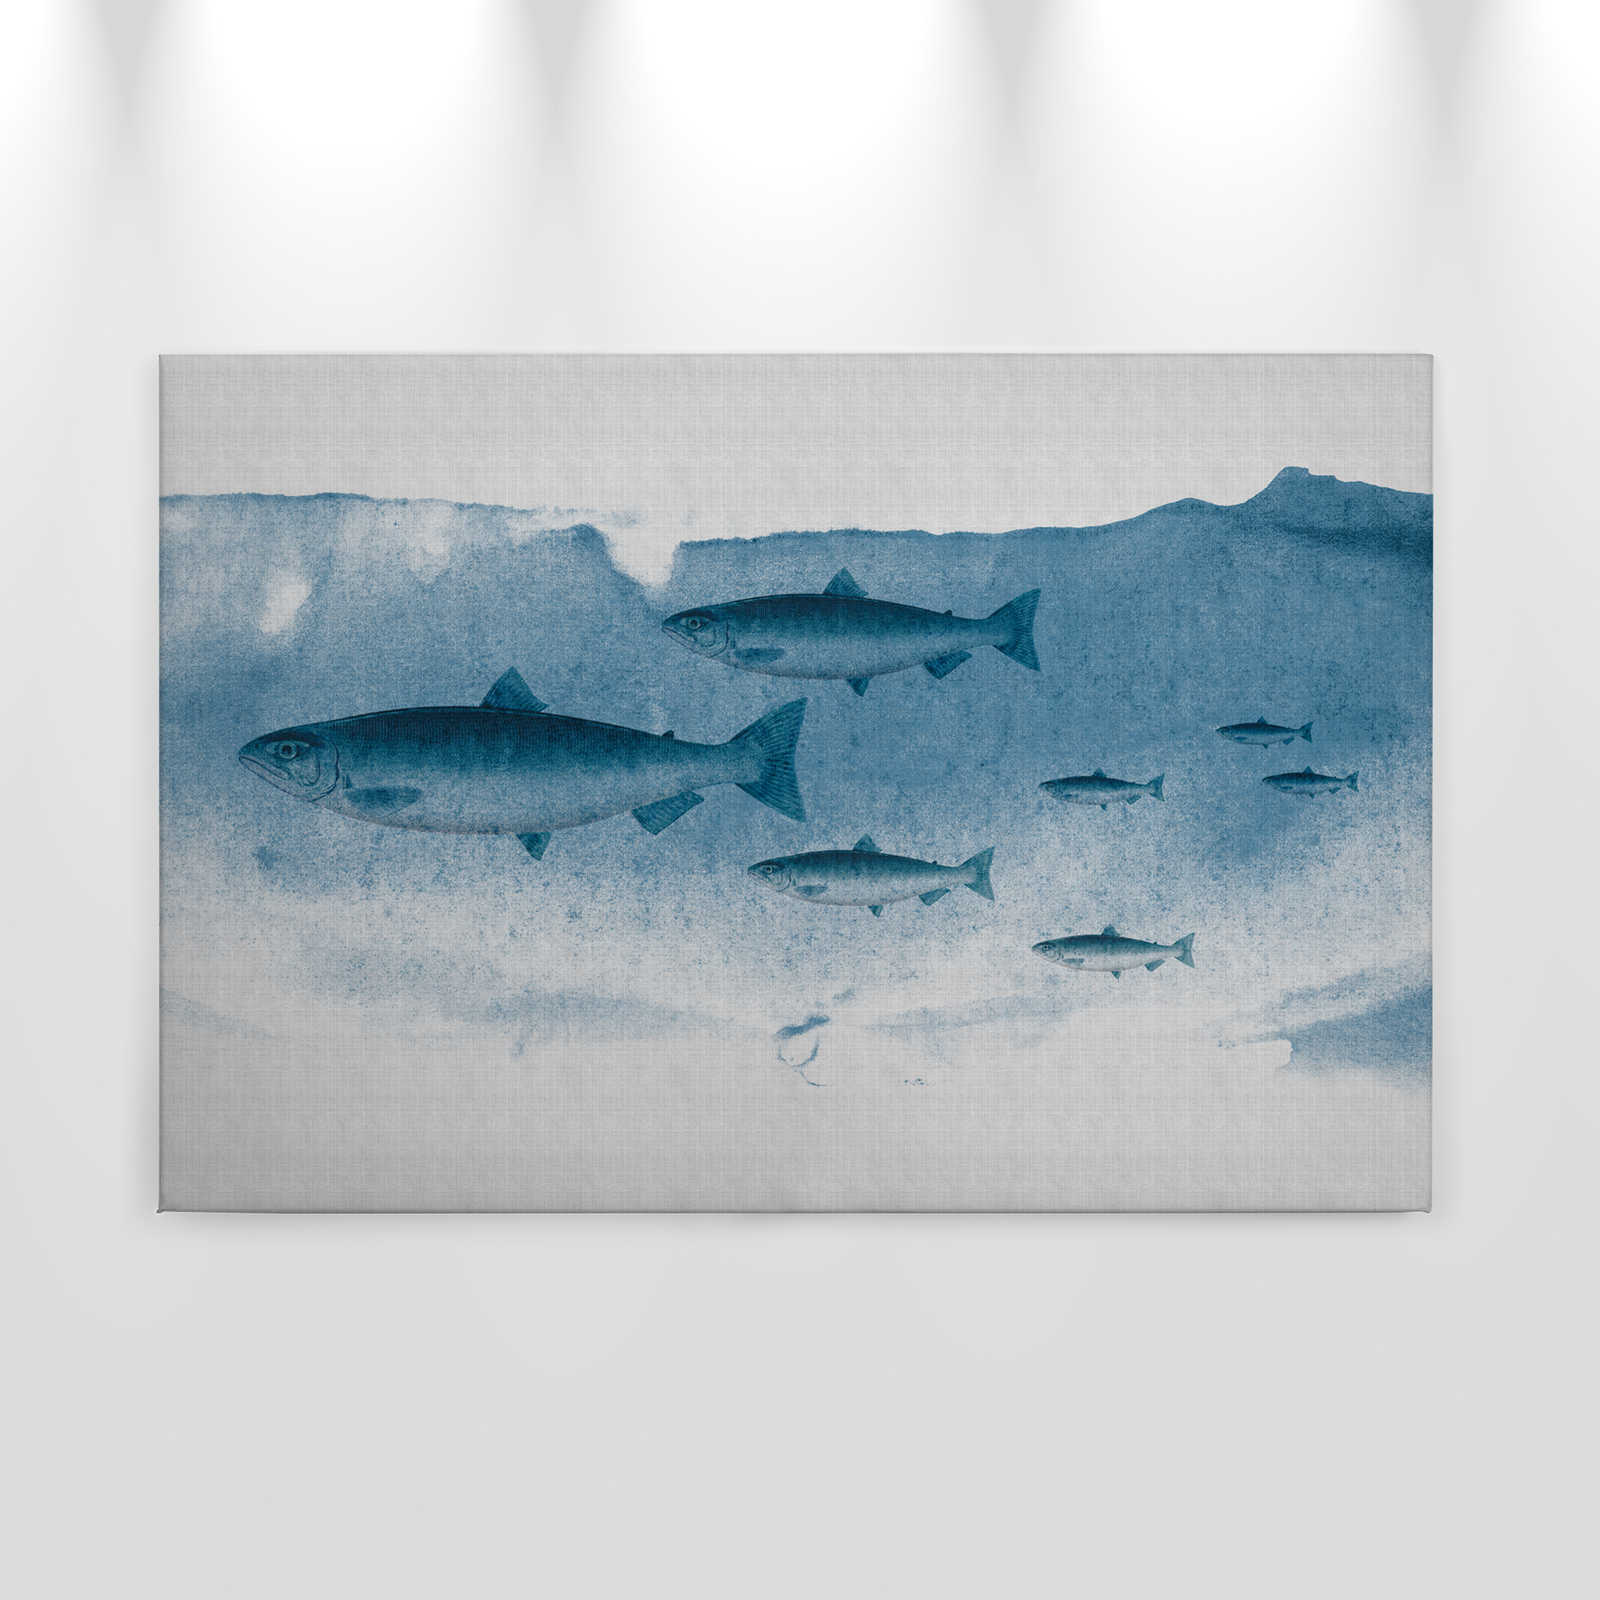             Into the blue 1 - Pesce acquerellato in blu come quadro su tela in struttura di lino naturale - 0,90 m x 0,60 m
        